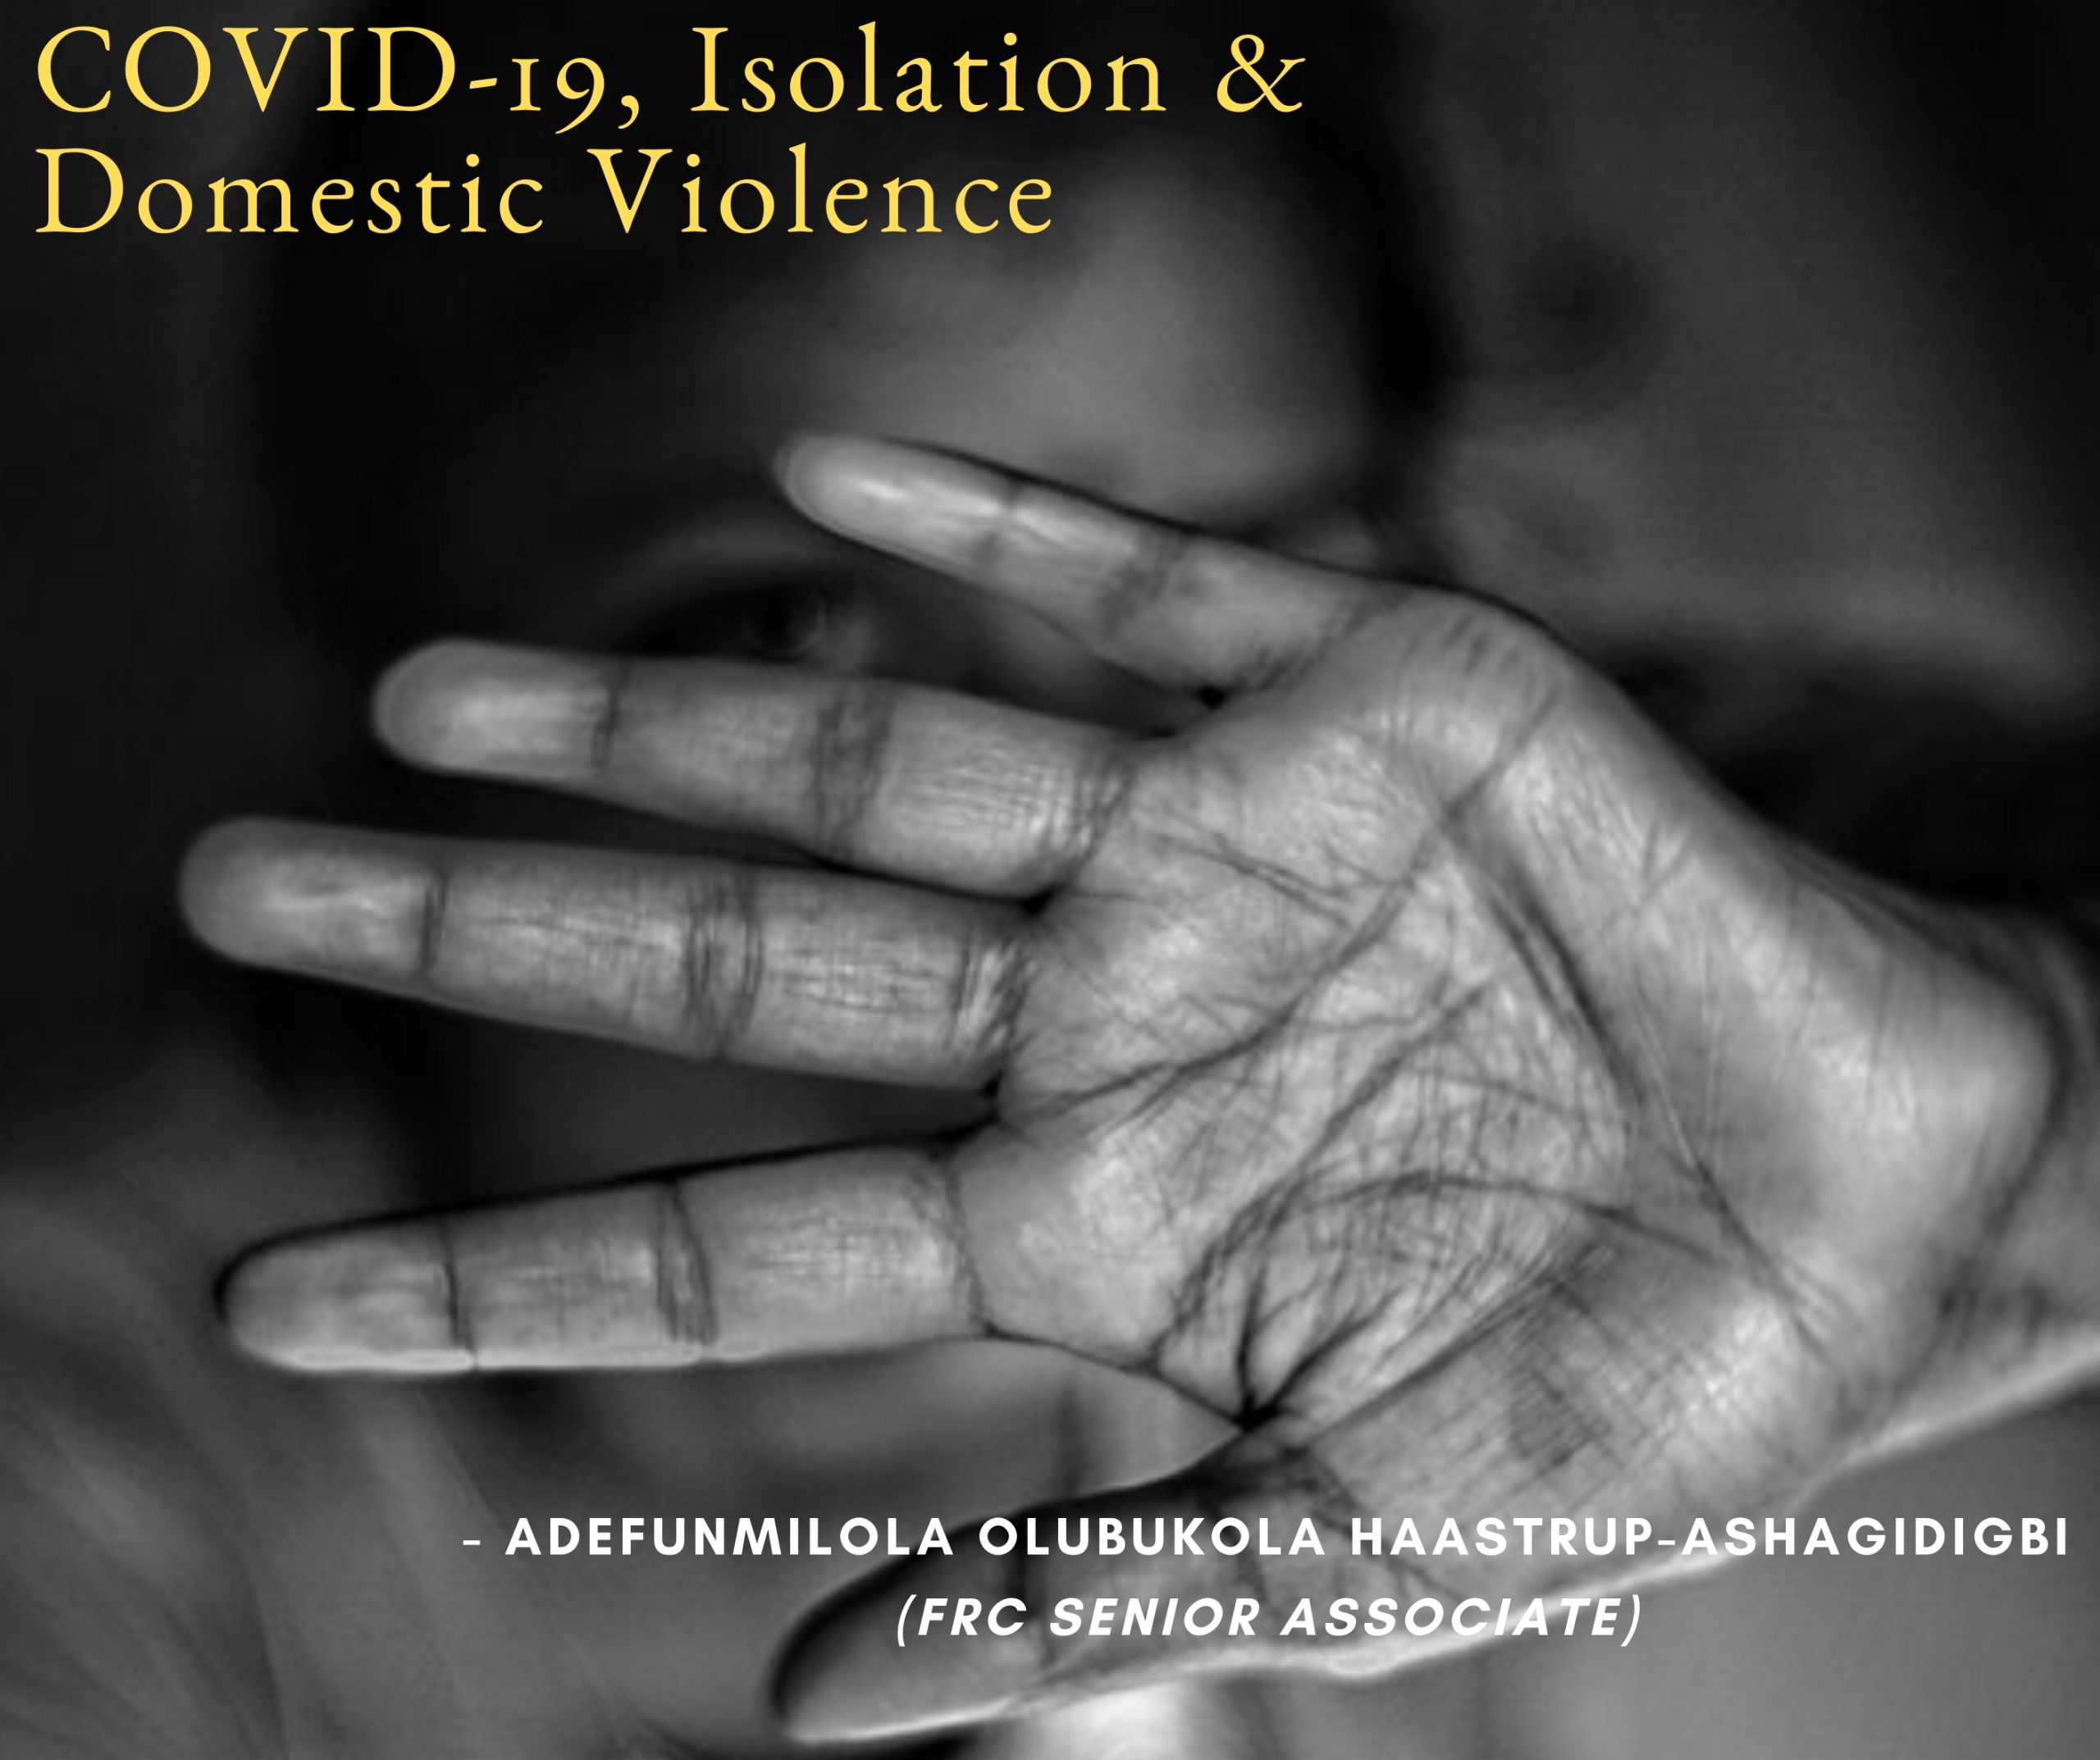 COVID-19, Isolation & Domestic Violence